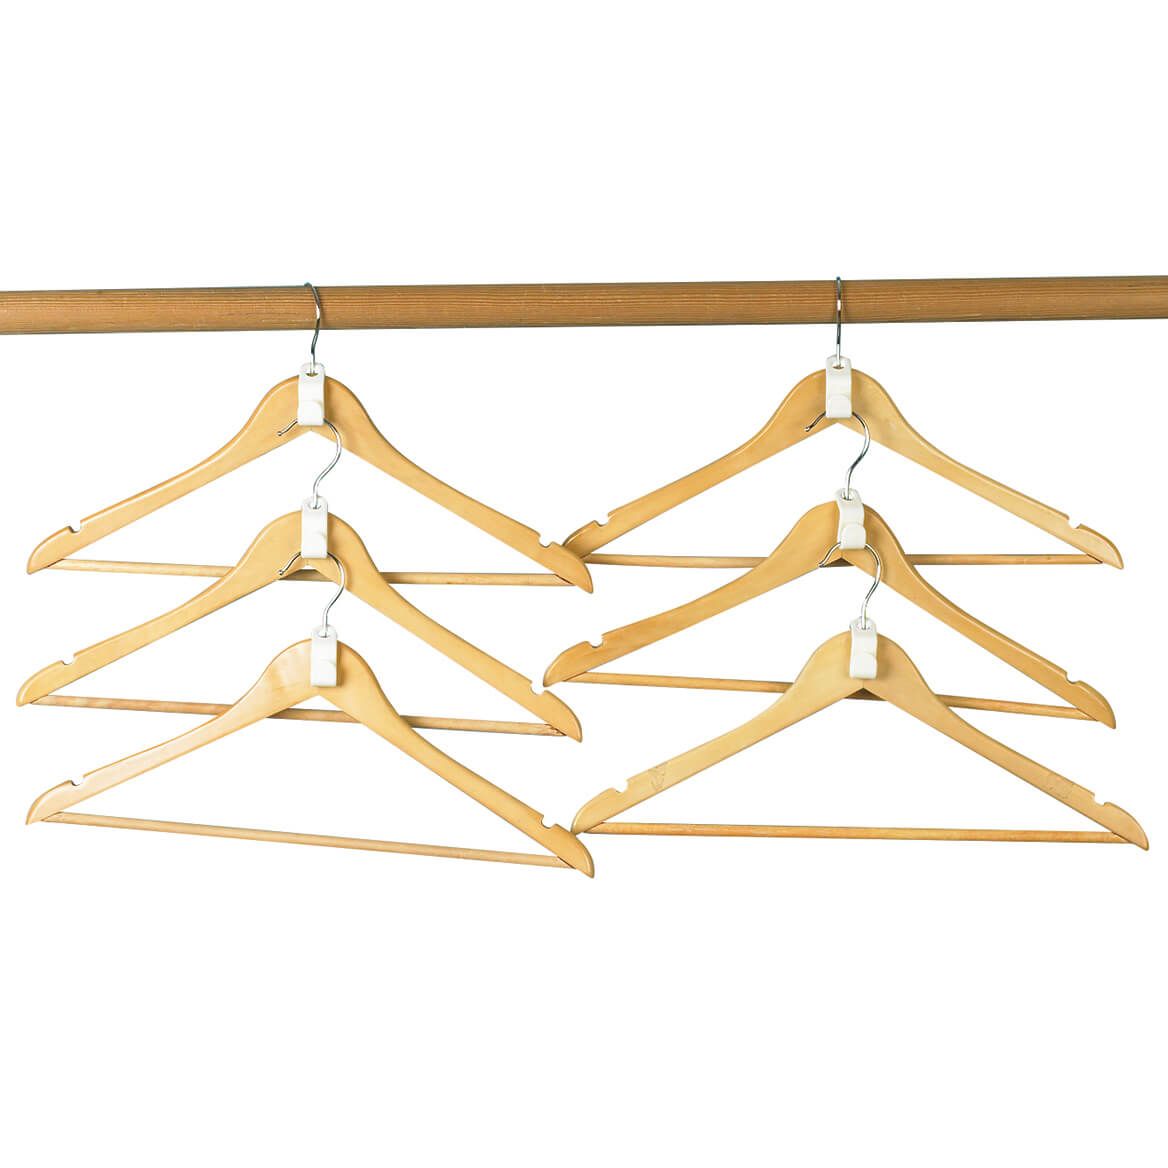 Hanger Connector Hooks, Set of 30 + '-' + 376164